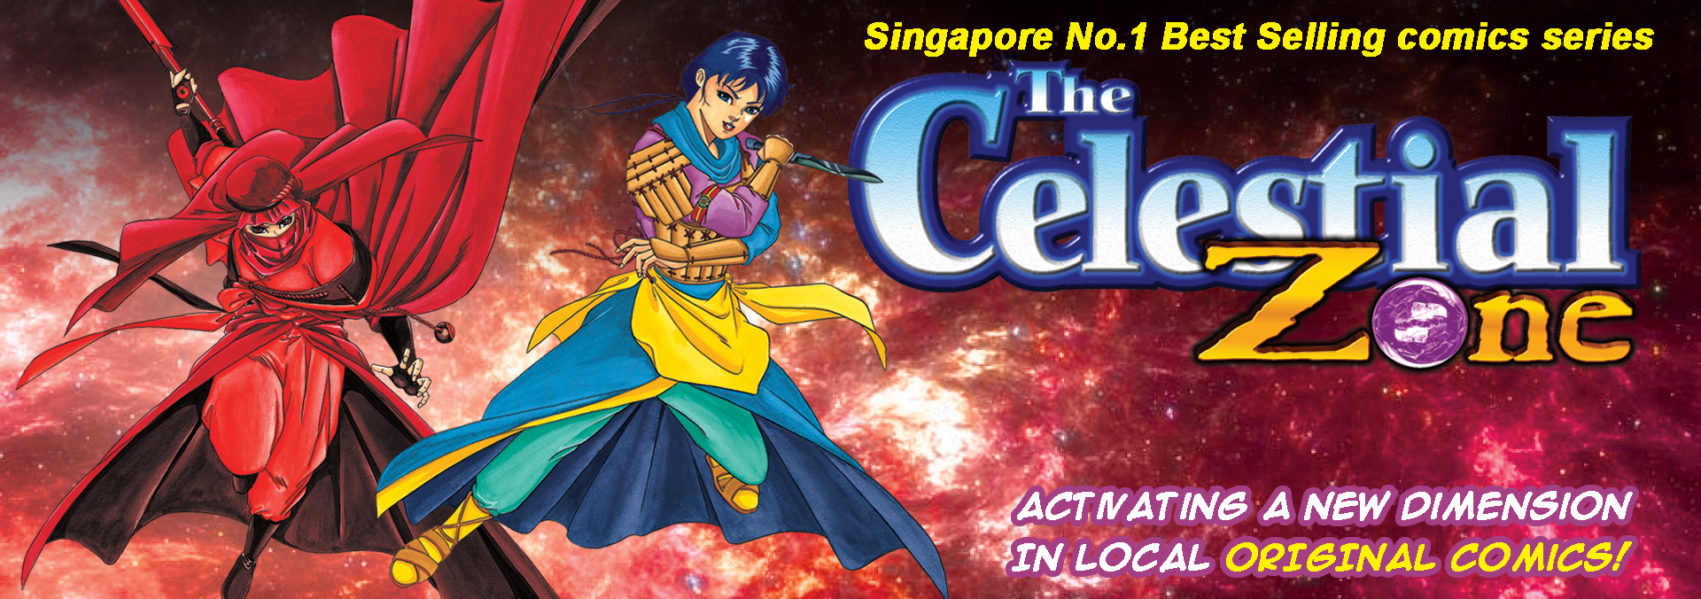 Pura Comixmag Singapore Original Comics Online Free The Celestial Zone Manga